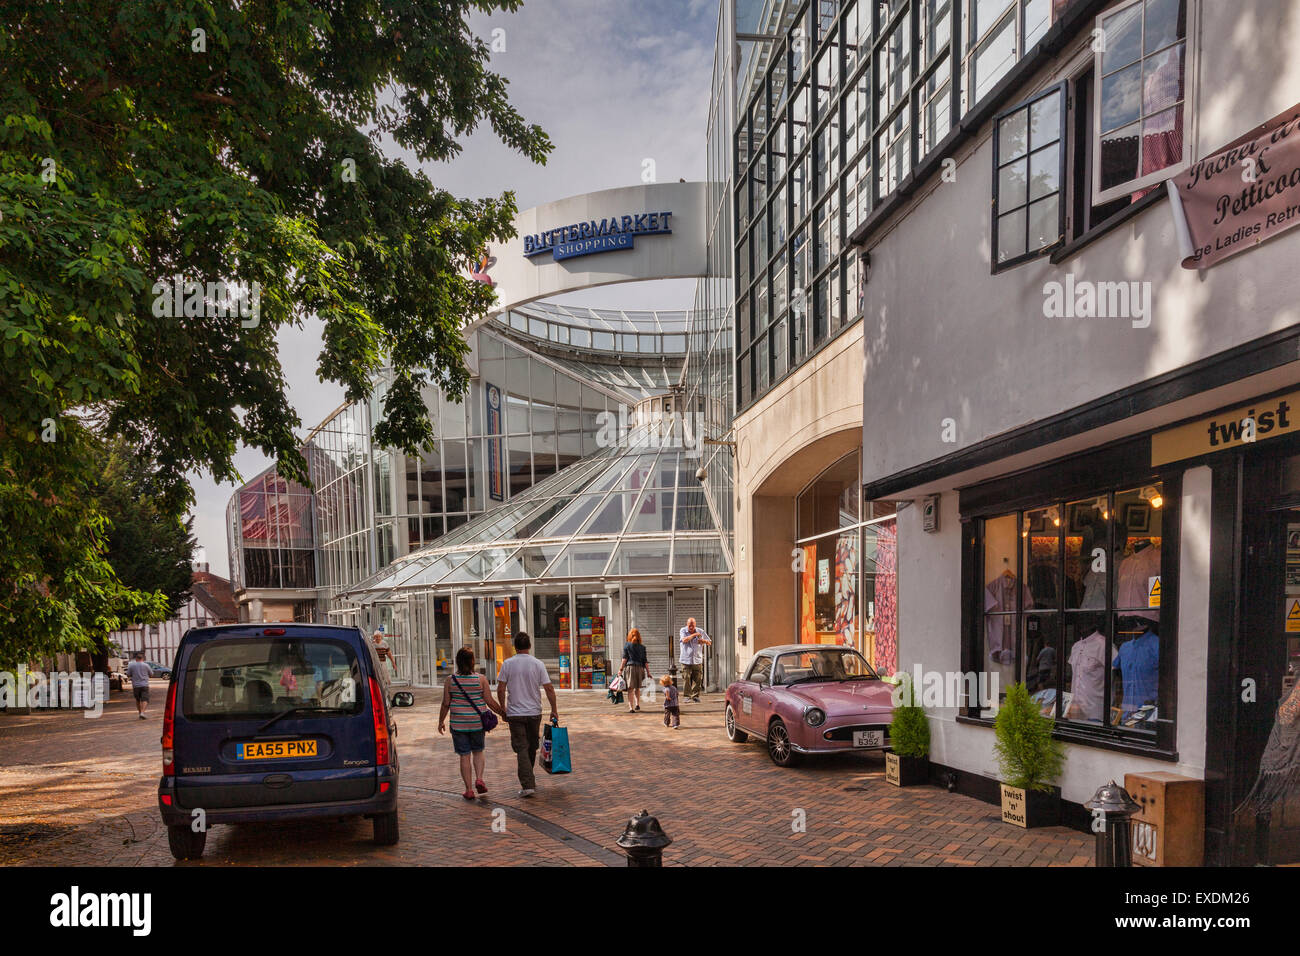 Straßenszene in Ipswich mit der Buttermarket Shopping Centre, Ipswich, Suffolk, England Stockfoto